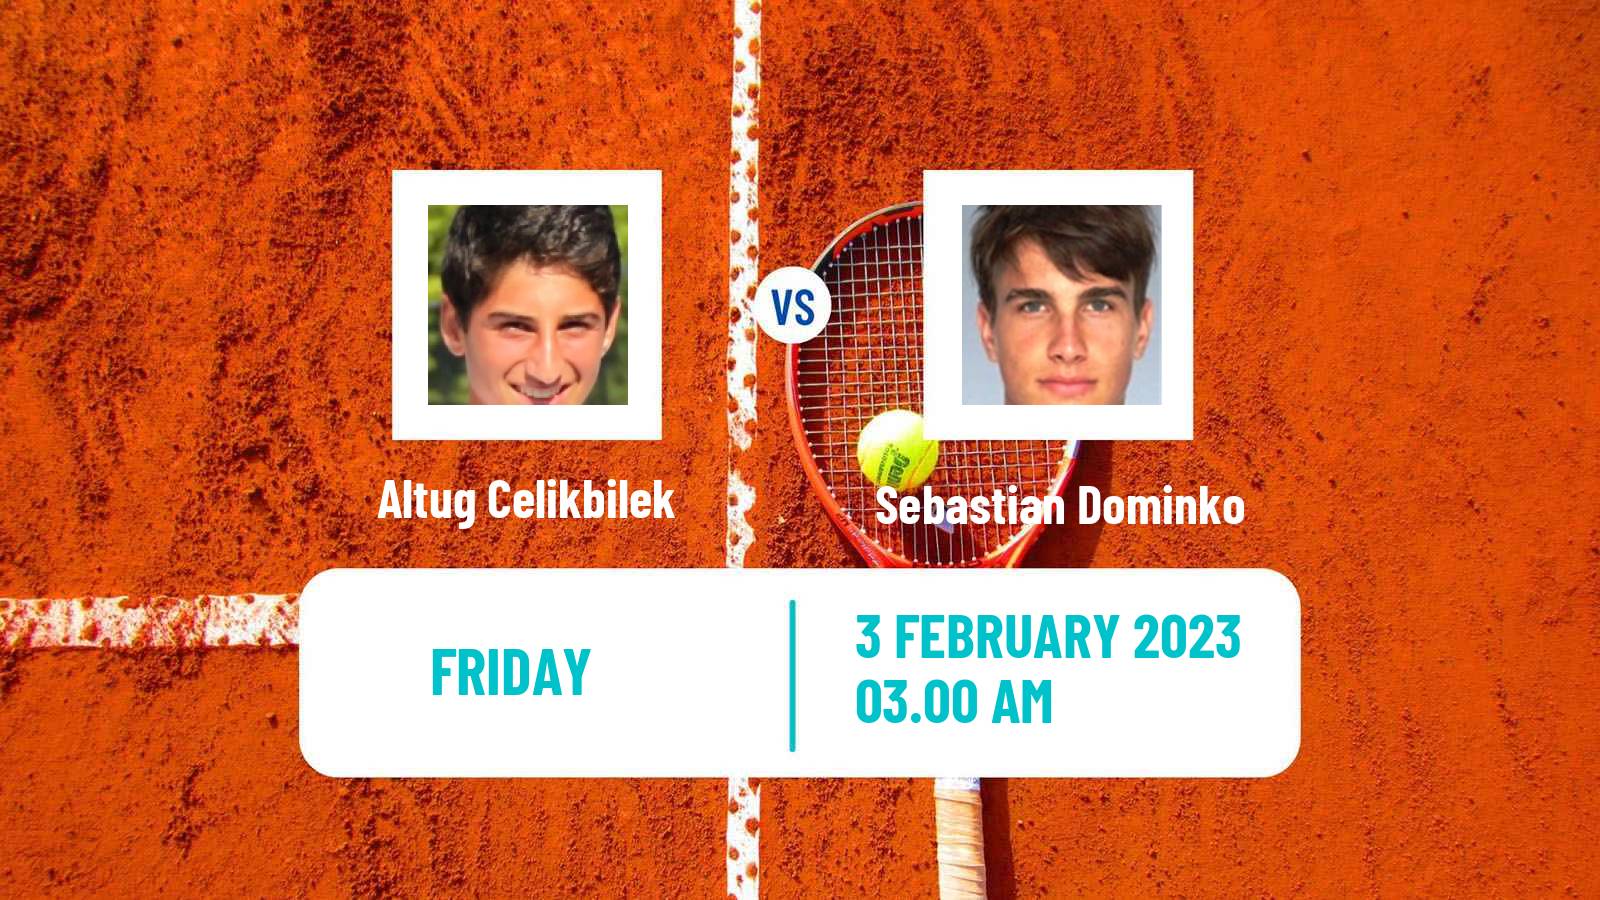 Tennis Davis Cup World Group I Altug Celikbilek - Sebastian Dominko